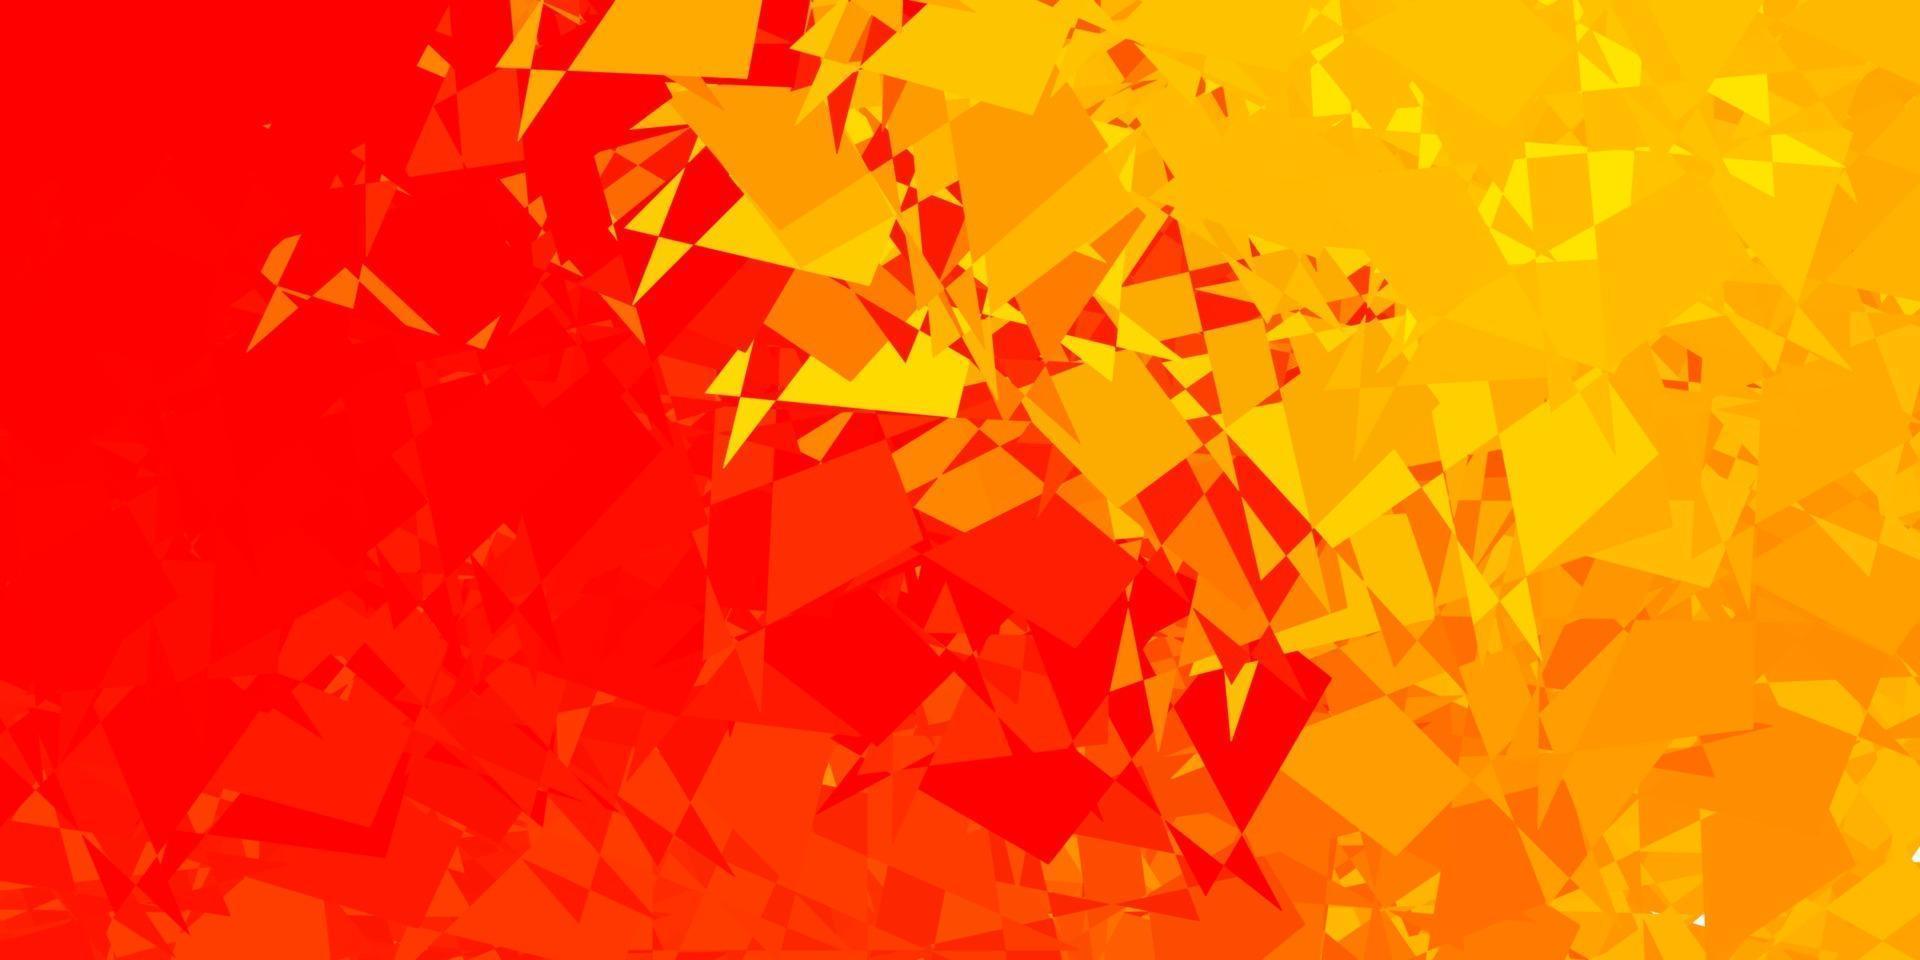 textura de vector rojo, amarillo claro con formas de memphis.